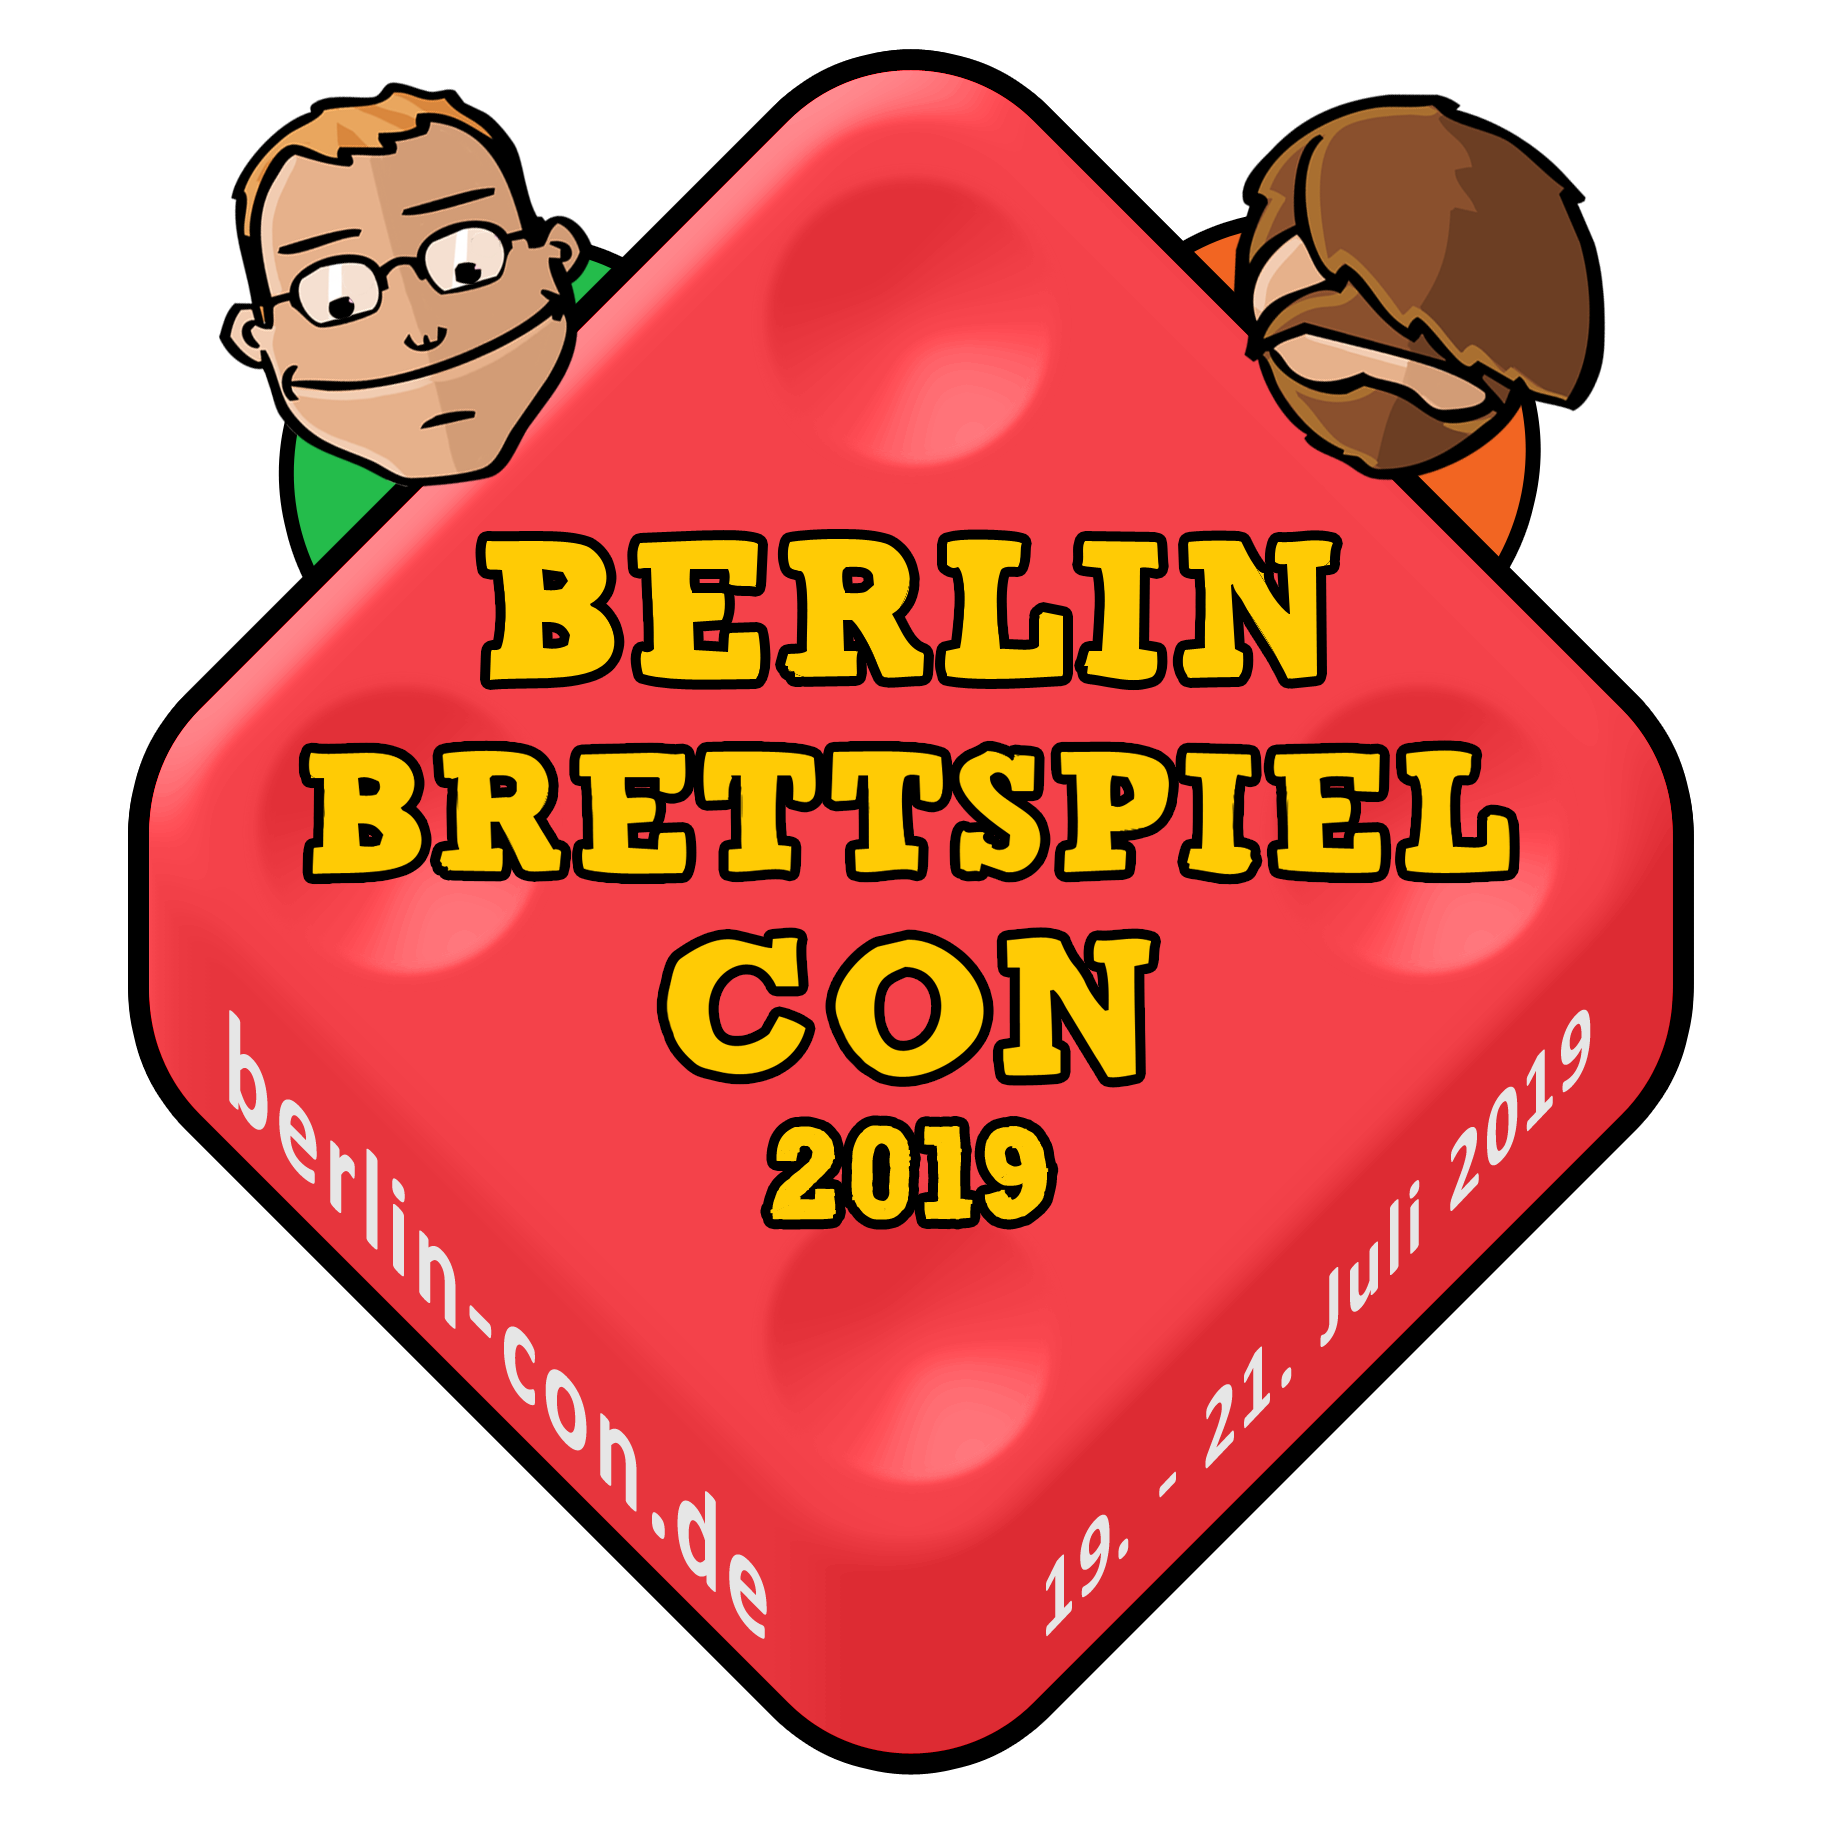 Berlin Brettspiel Con 2019